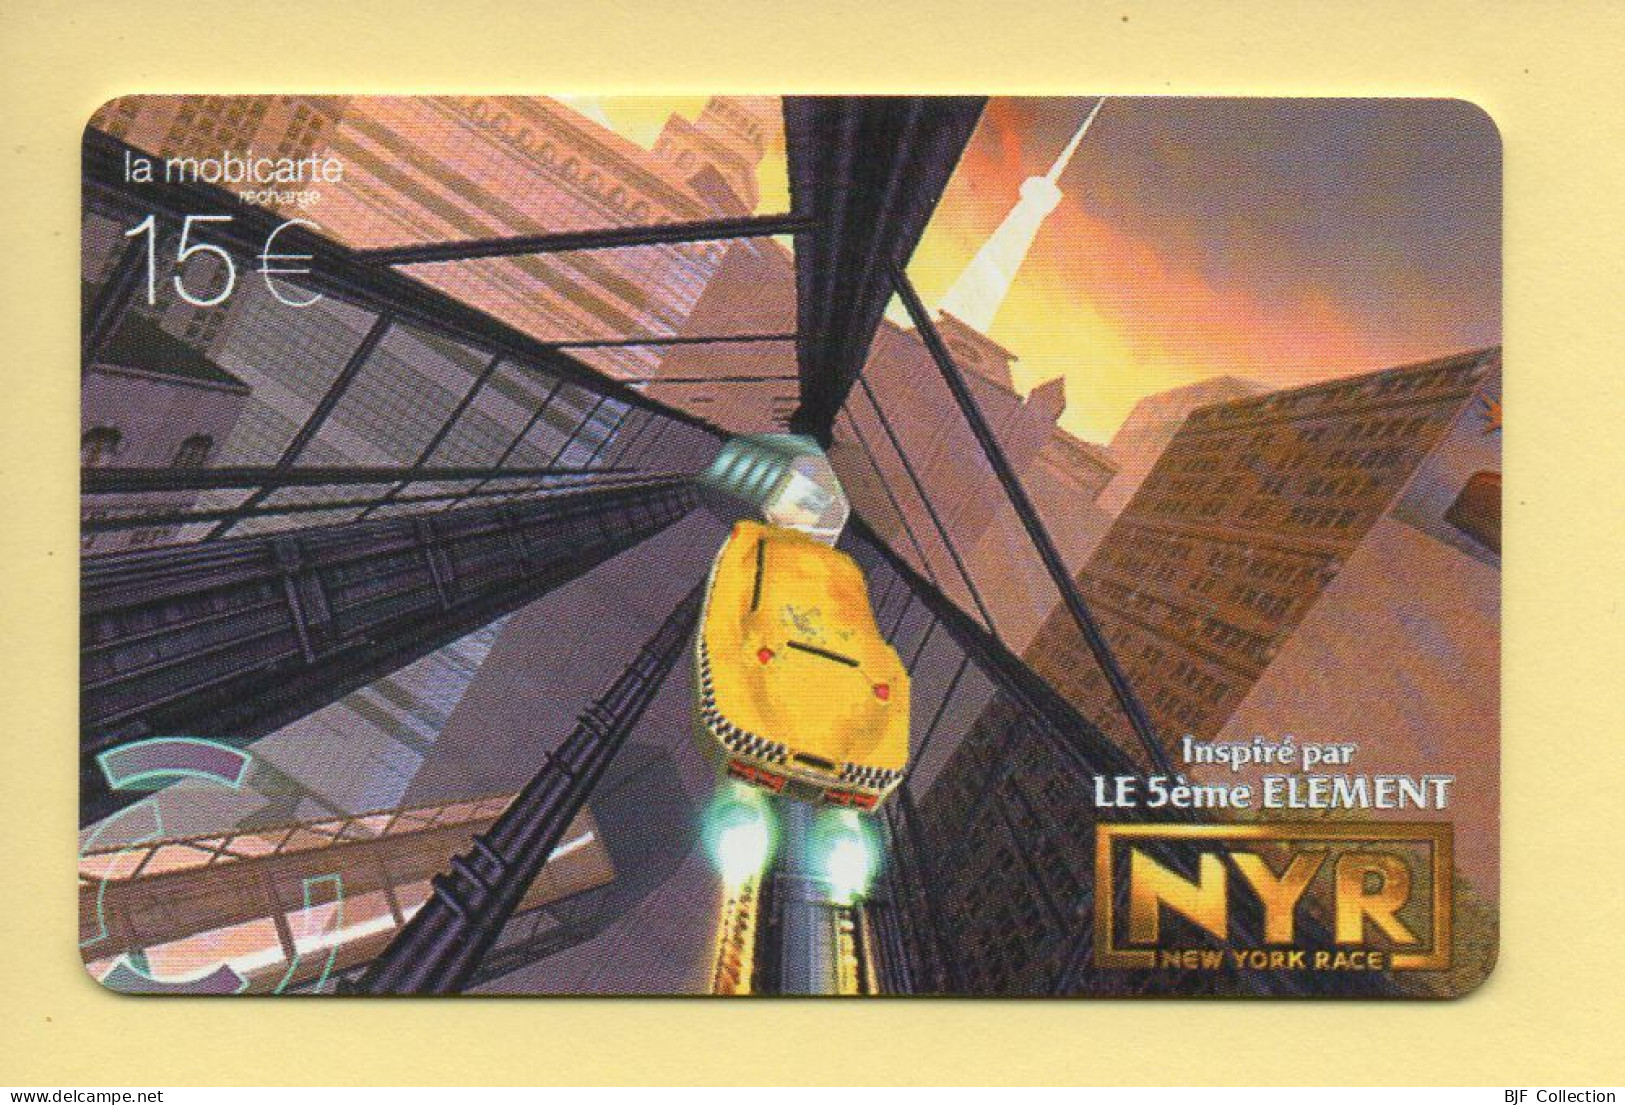 Mobicarte Collector : NEW YORK RACE / LE 5ème ELEMENT : Orange : 06/2003 : Recharge 15 E (voir Cadre Et Numérotation) - Cellphone Cards (refills)